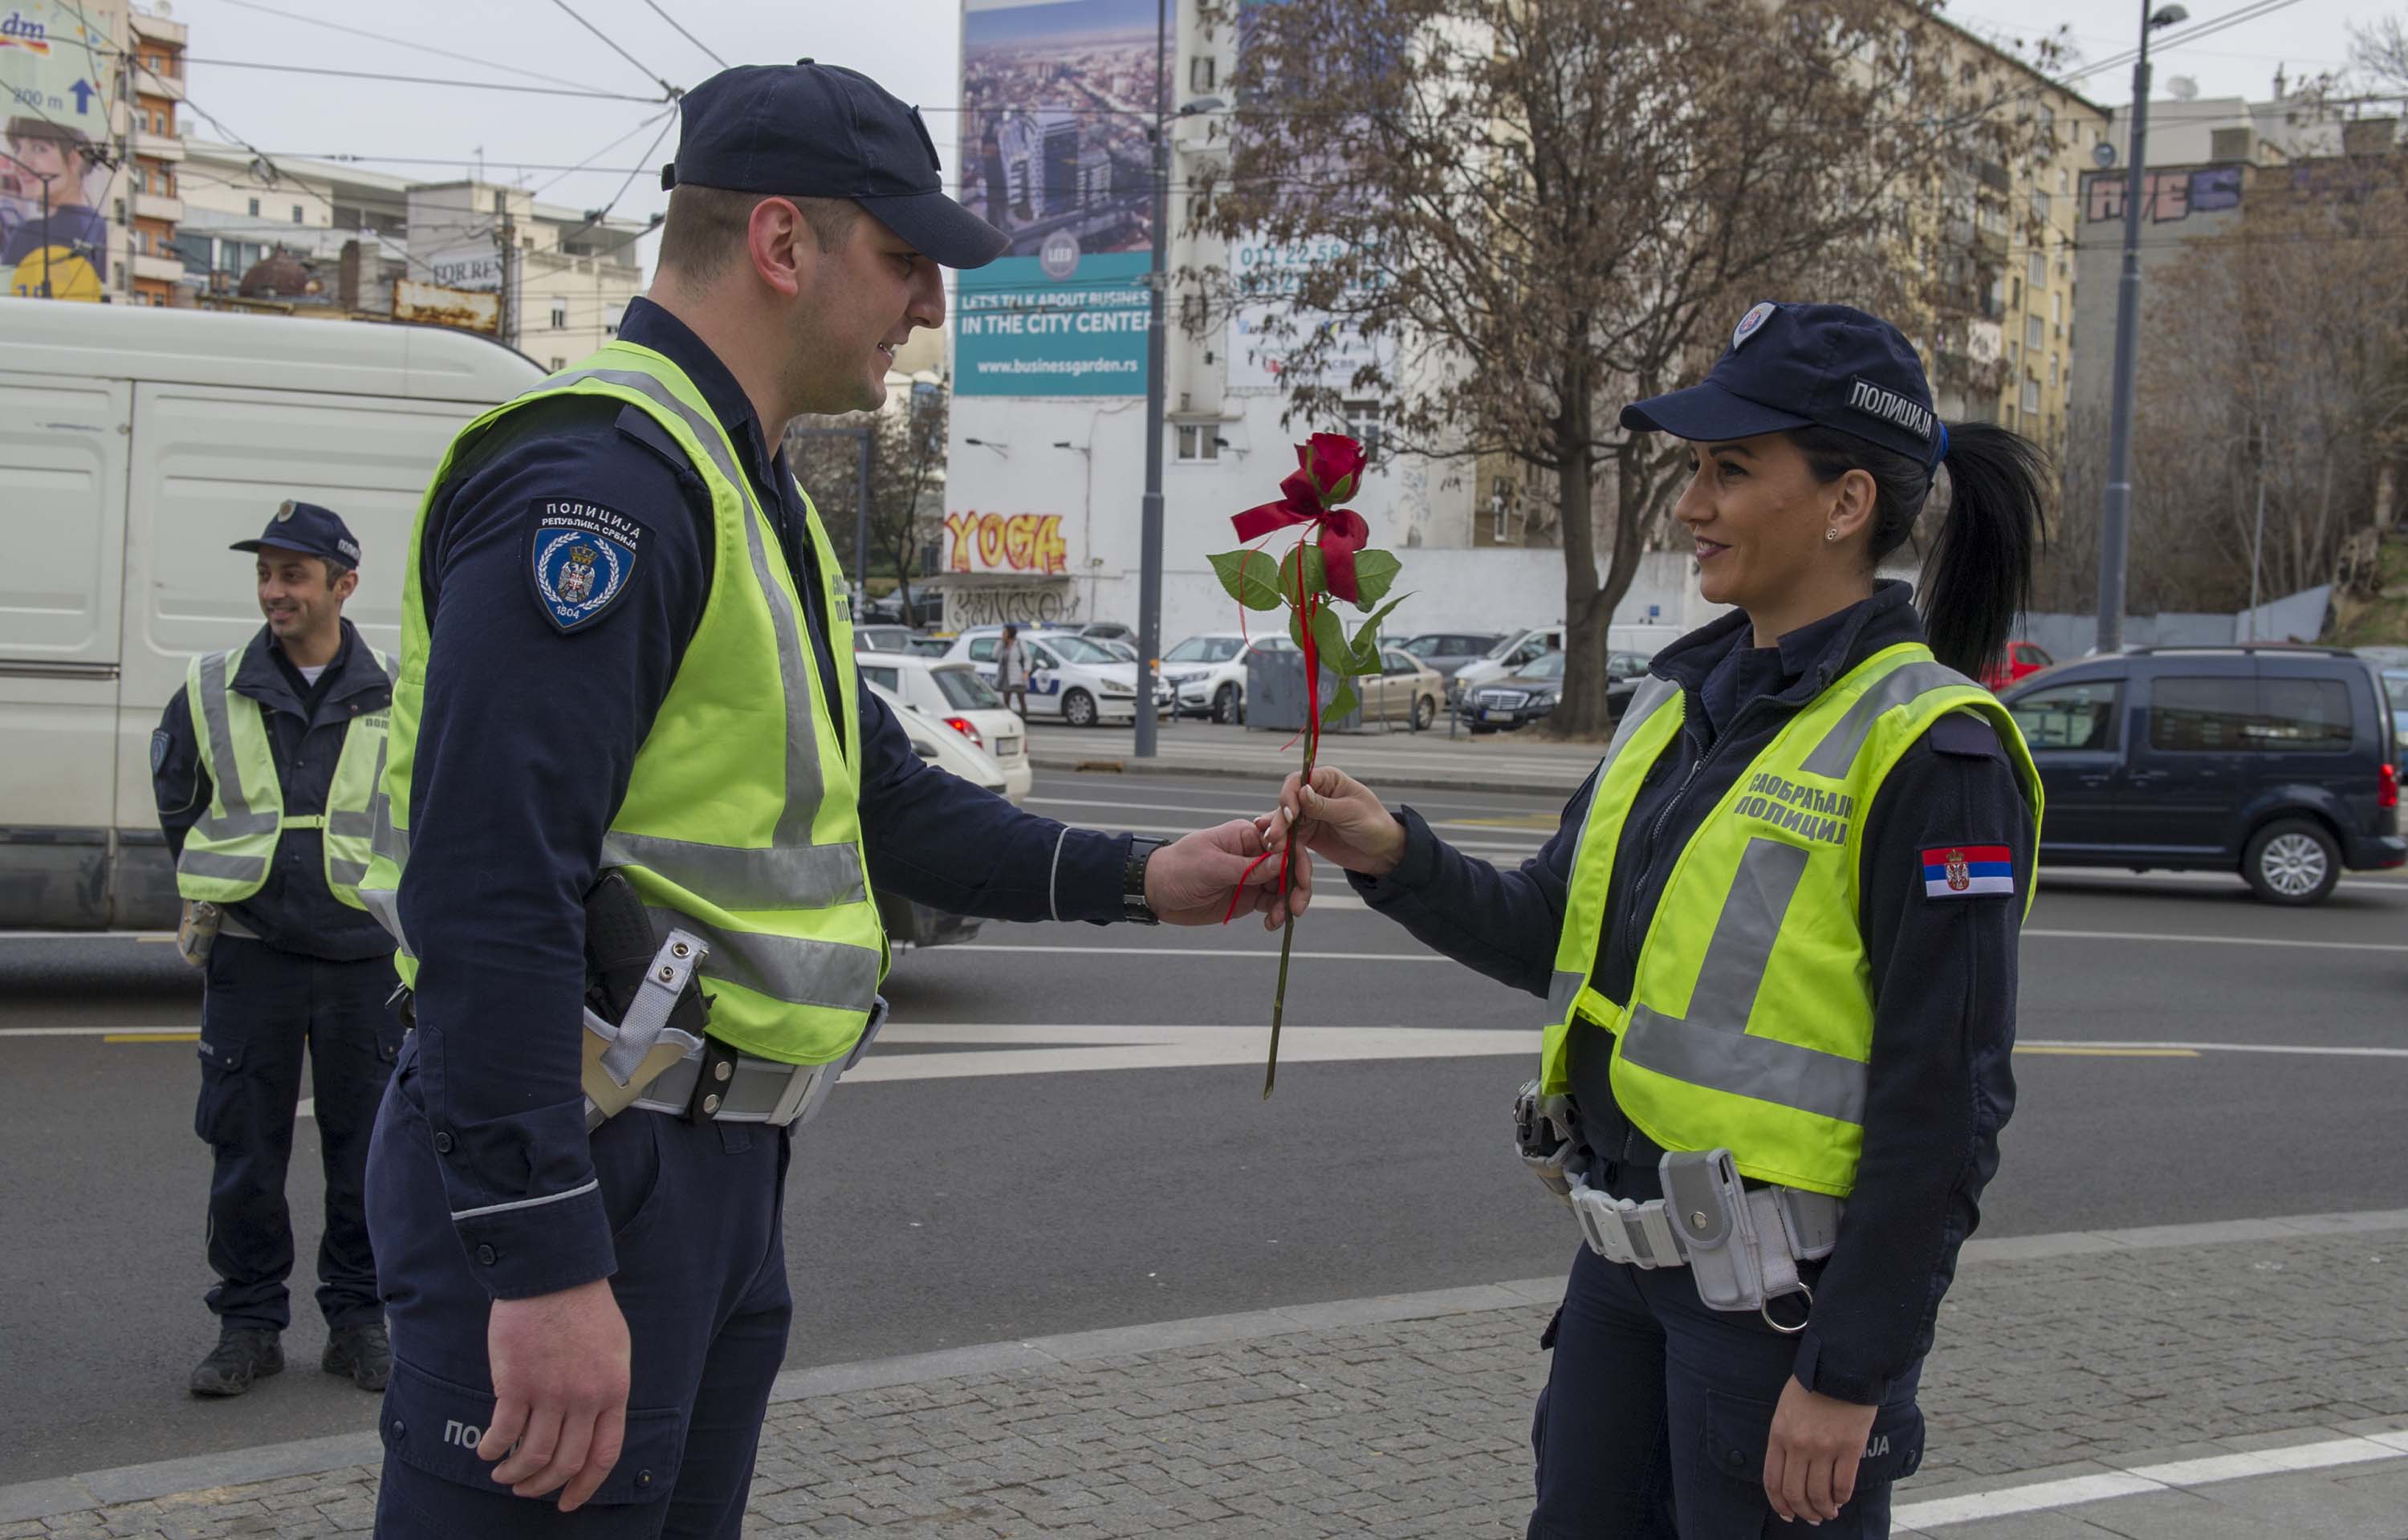 Pripadnici MUP-a prilkom redovne kontrole saobraćaja, čestitali svojim sugrađankama Osmi mart - Dan žena